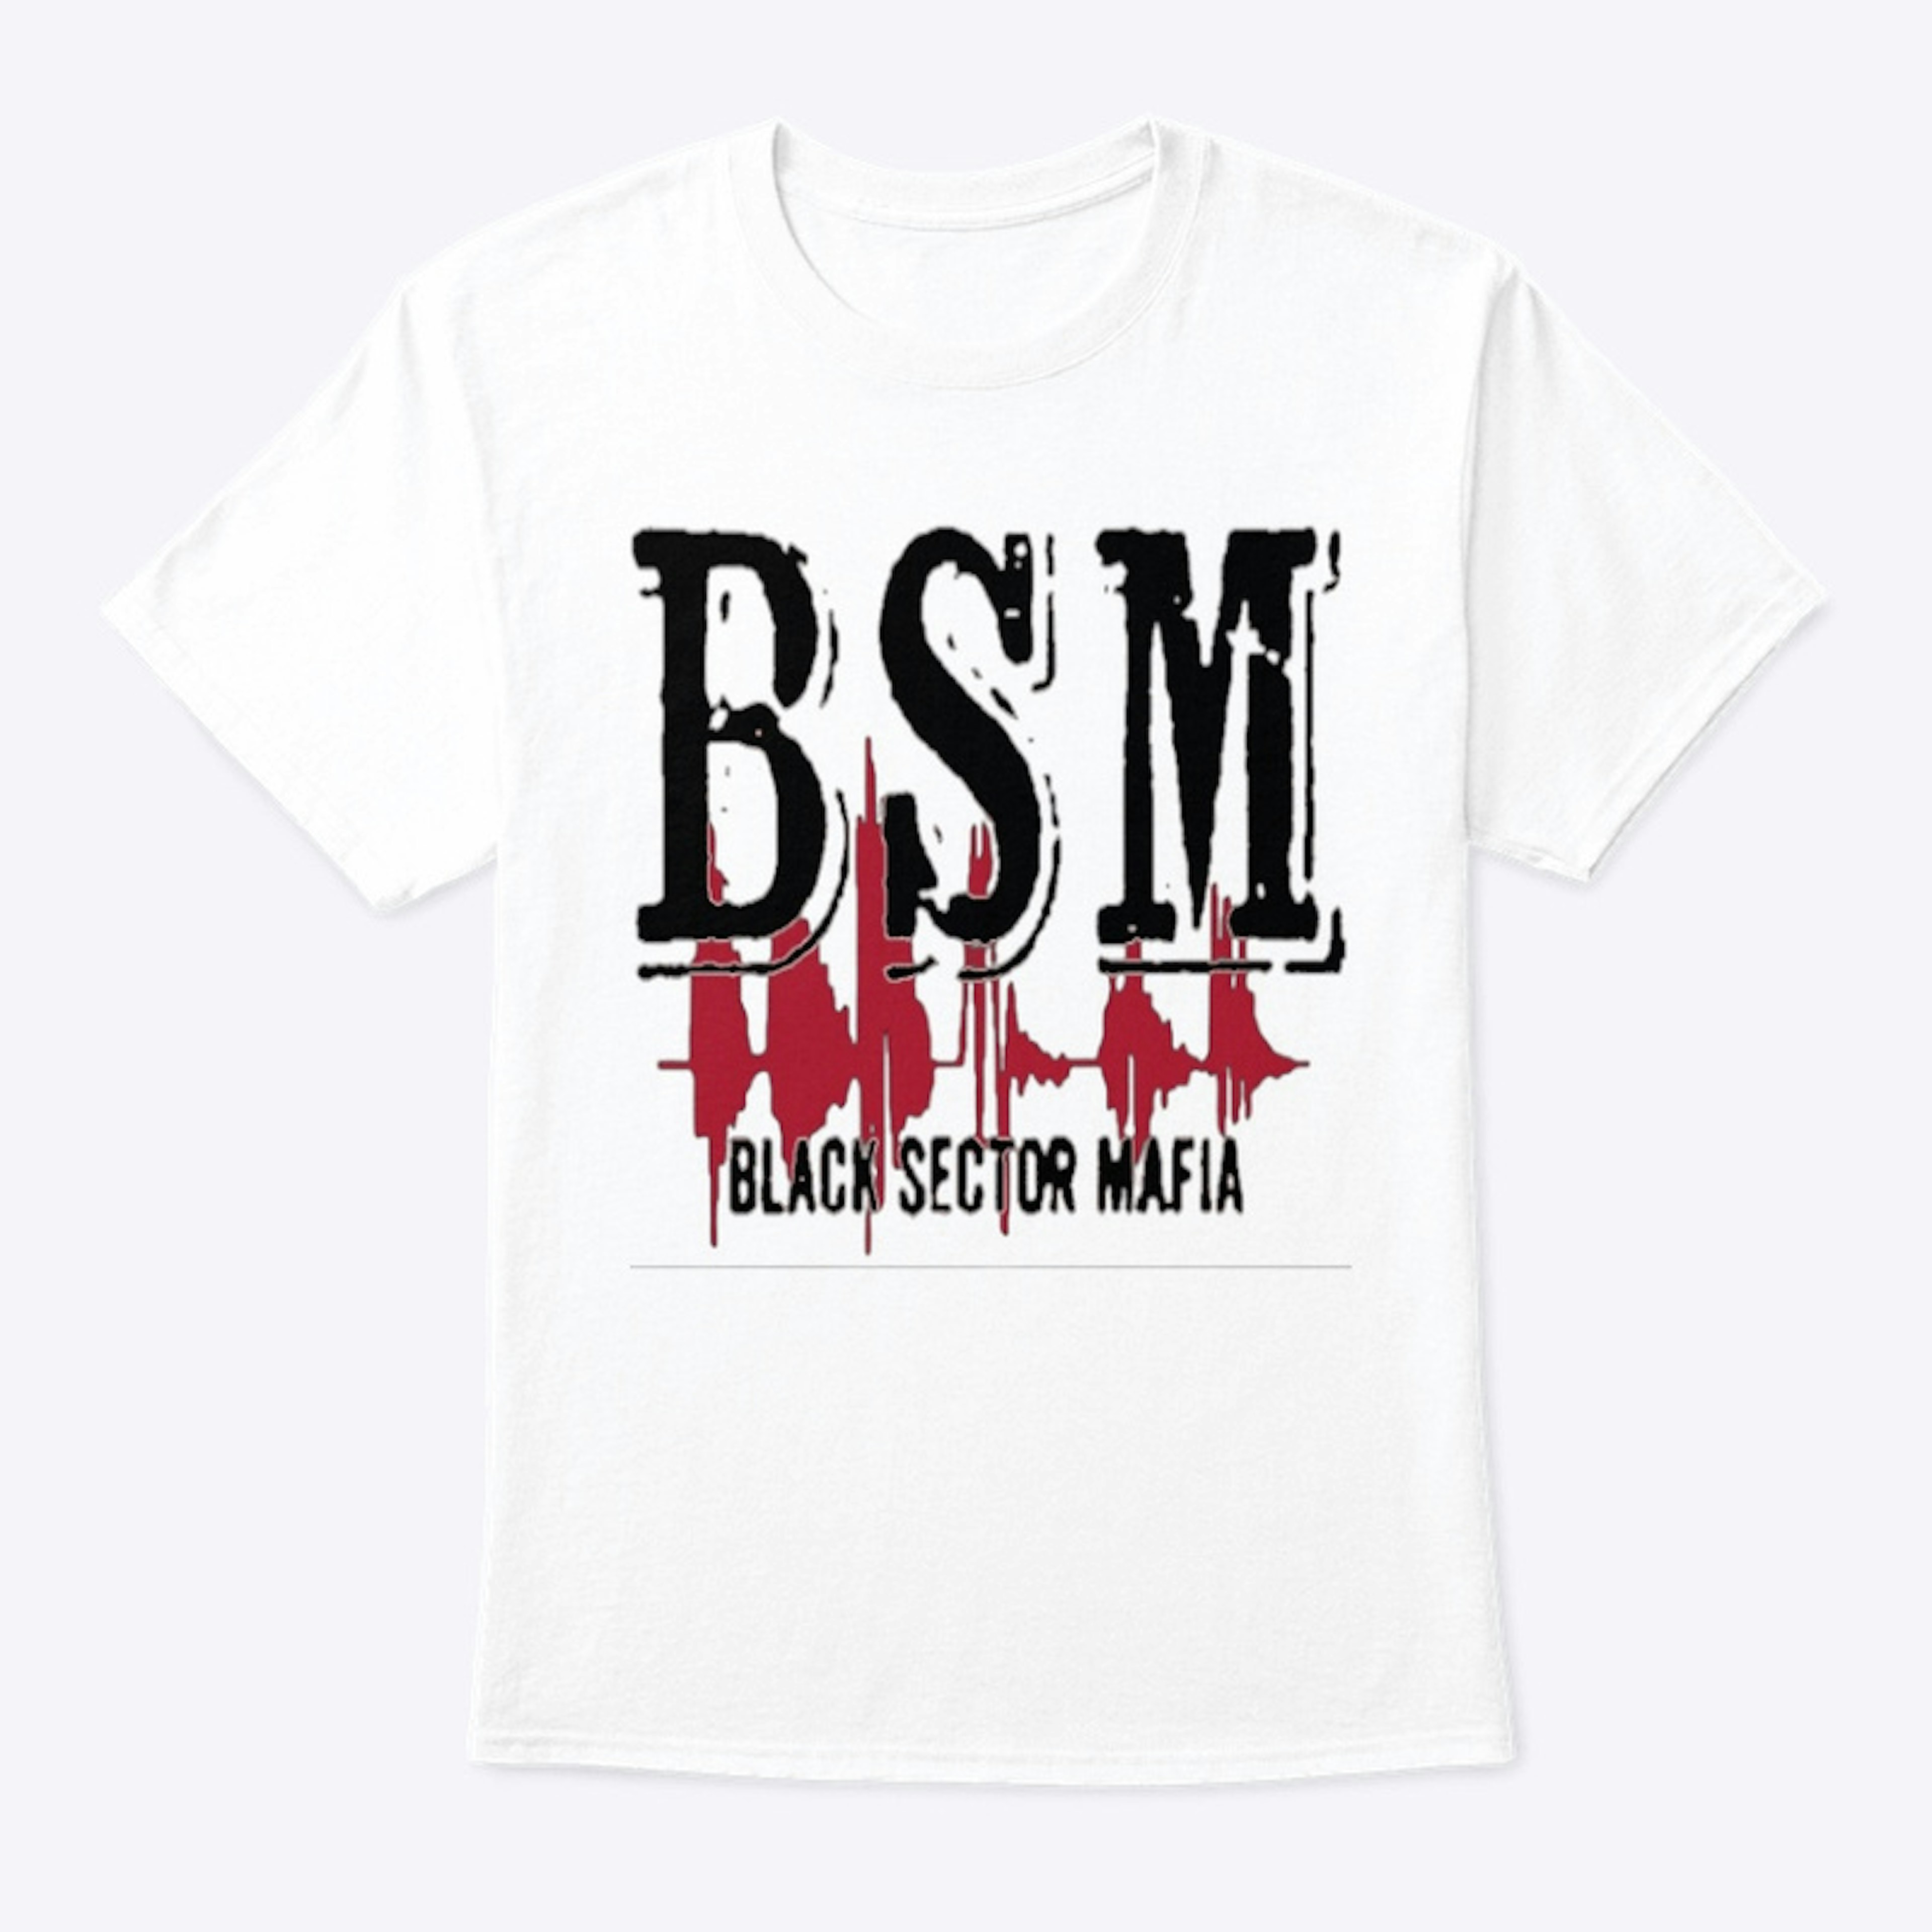 Black Sector Mafia (BSM) (Black/Red) 